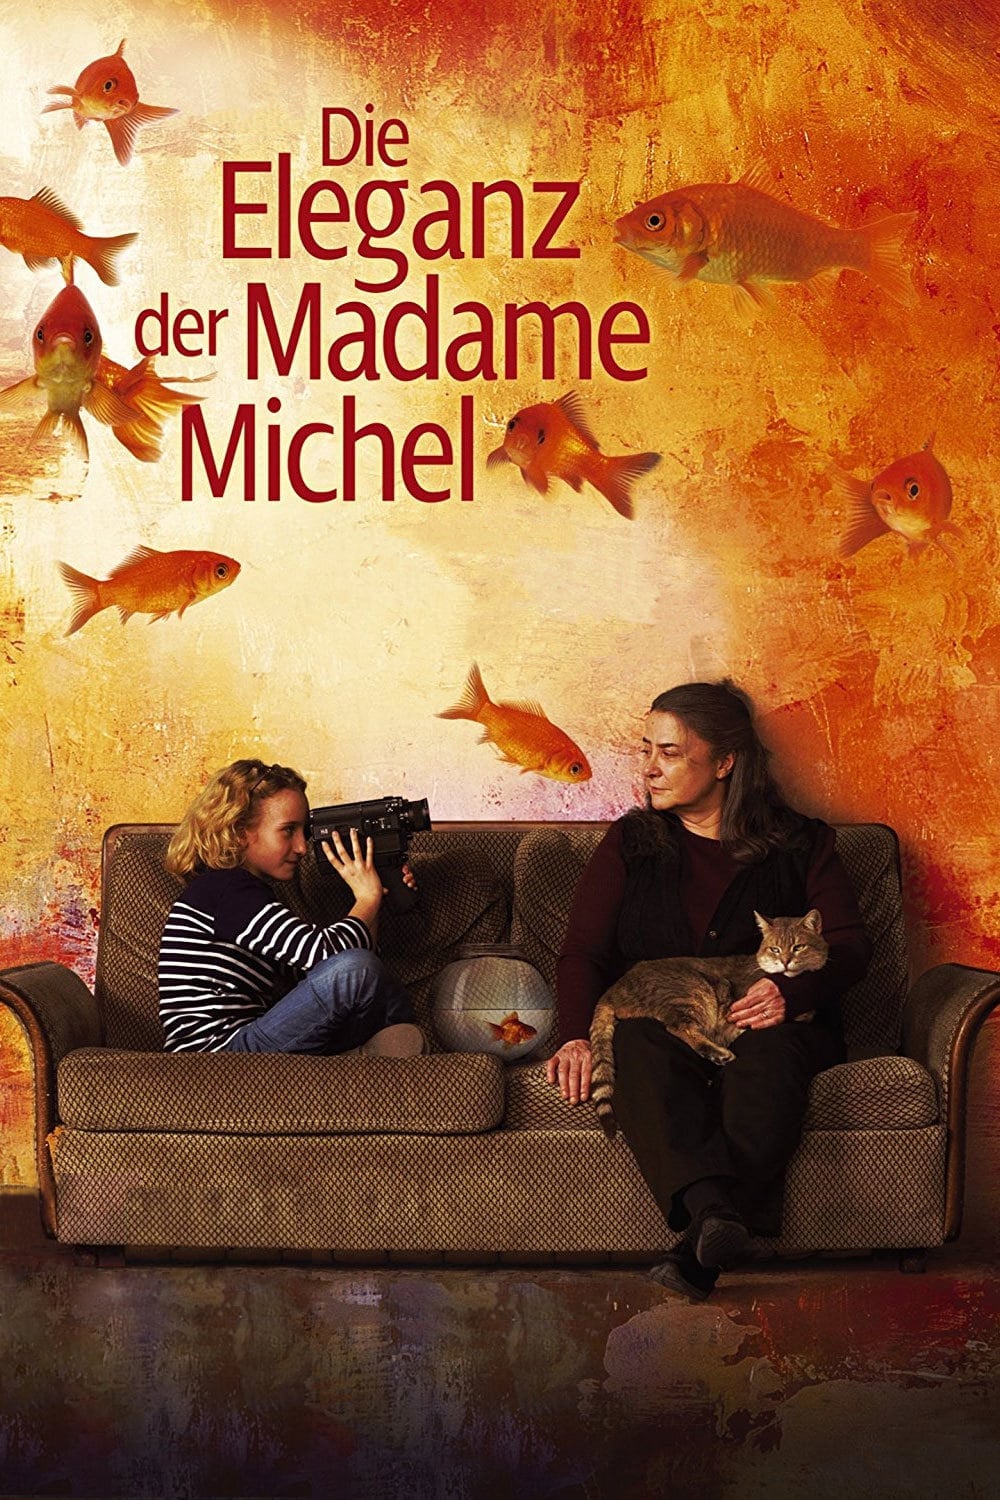 Plakat von "Die Eleganz der Madame Michel"